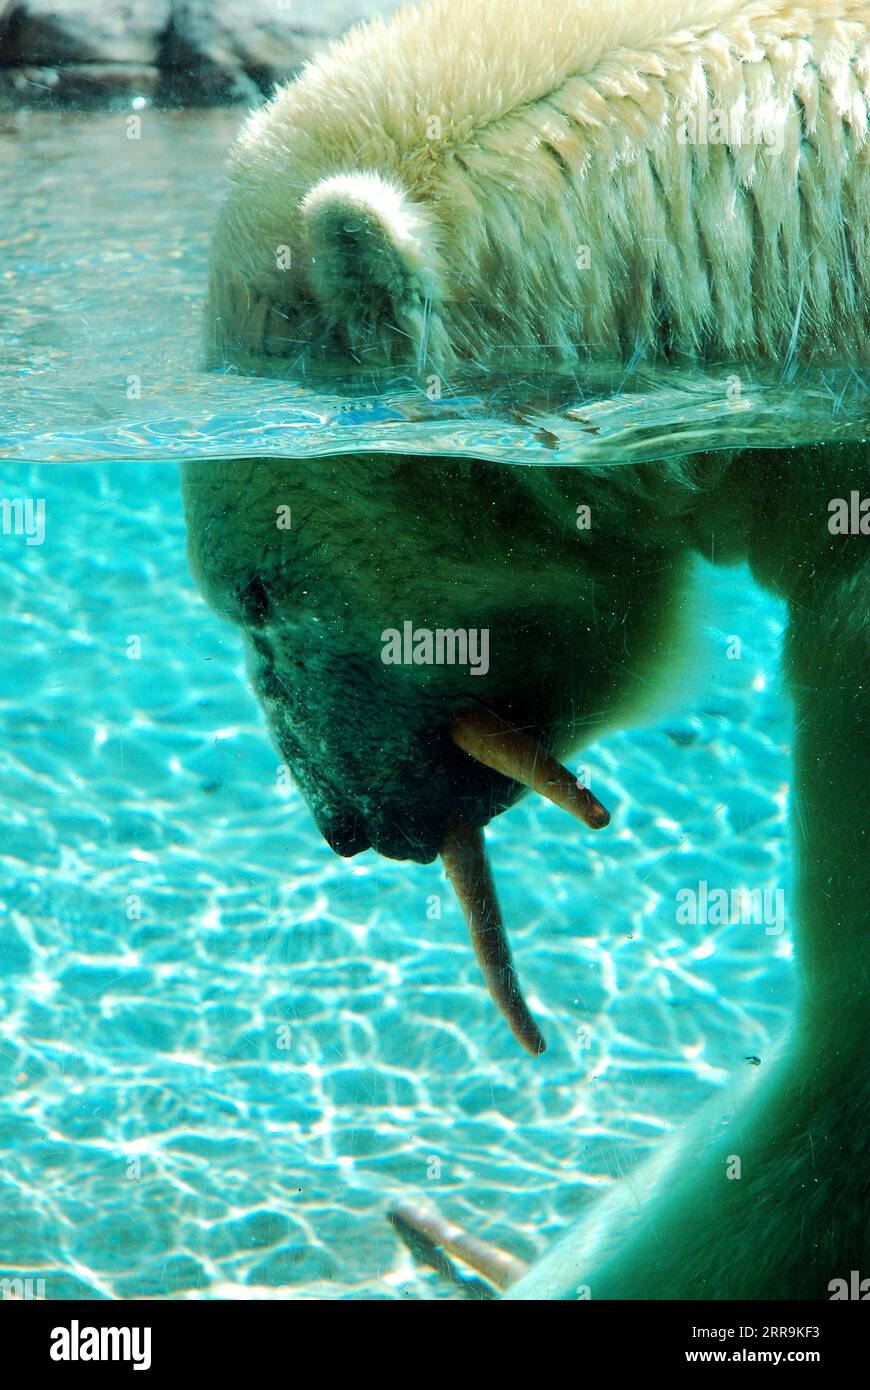 Ein Polarbär schlürft auf Karotten, während er seinen Kopf ins Wasser taucht Stockfoto